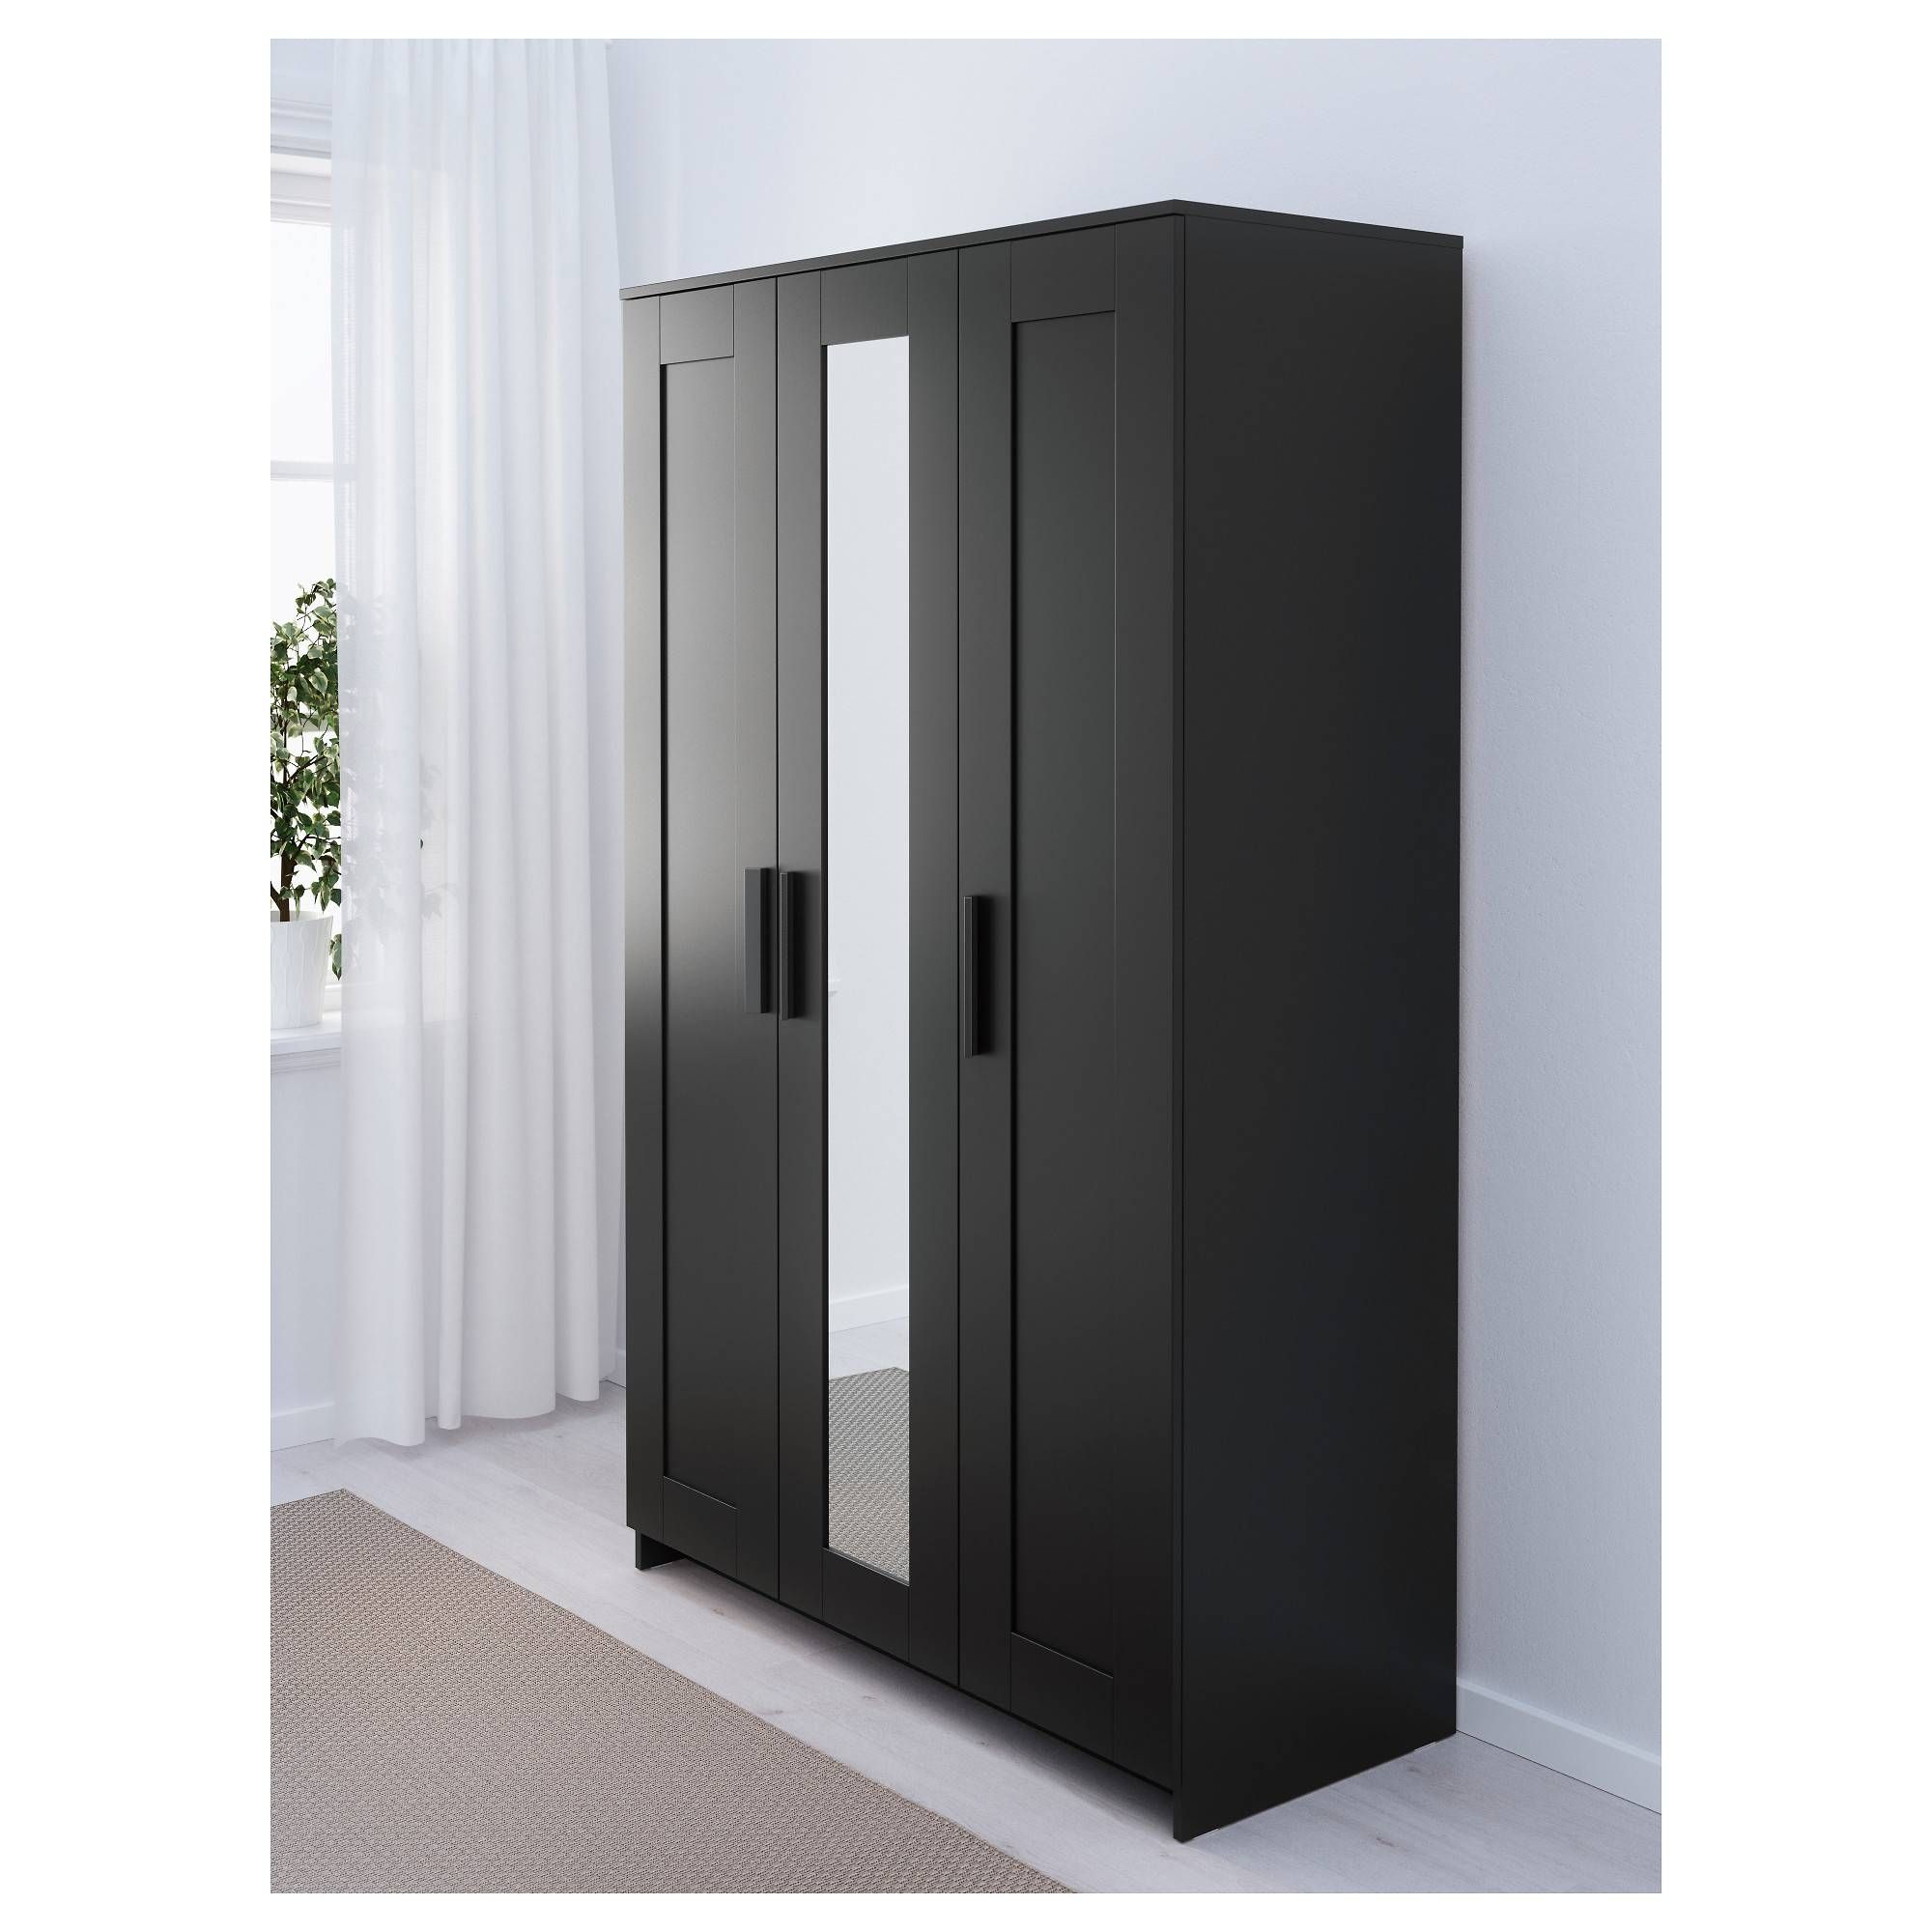 Brimnes Wardrobe With 3 Doors – Black – Ikea For Black 3 Door Wardrobes (View 1 of 15)